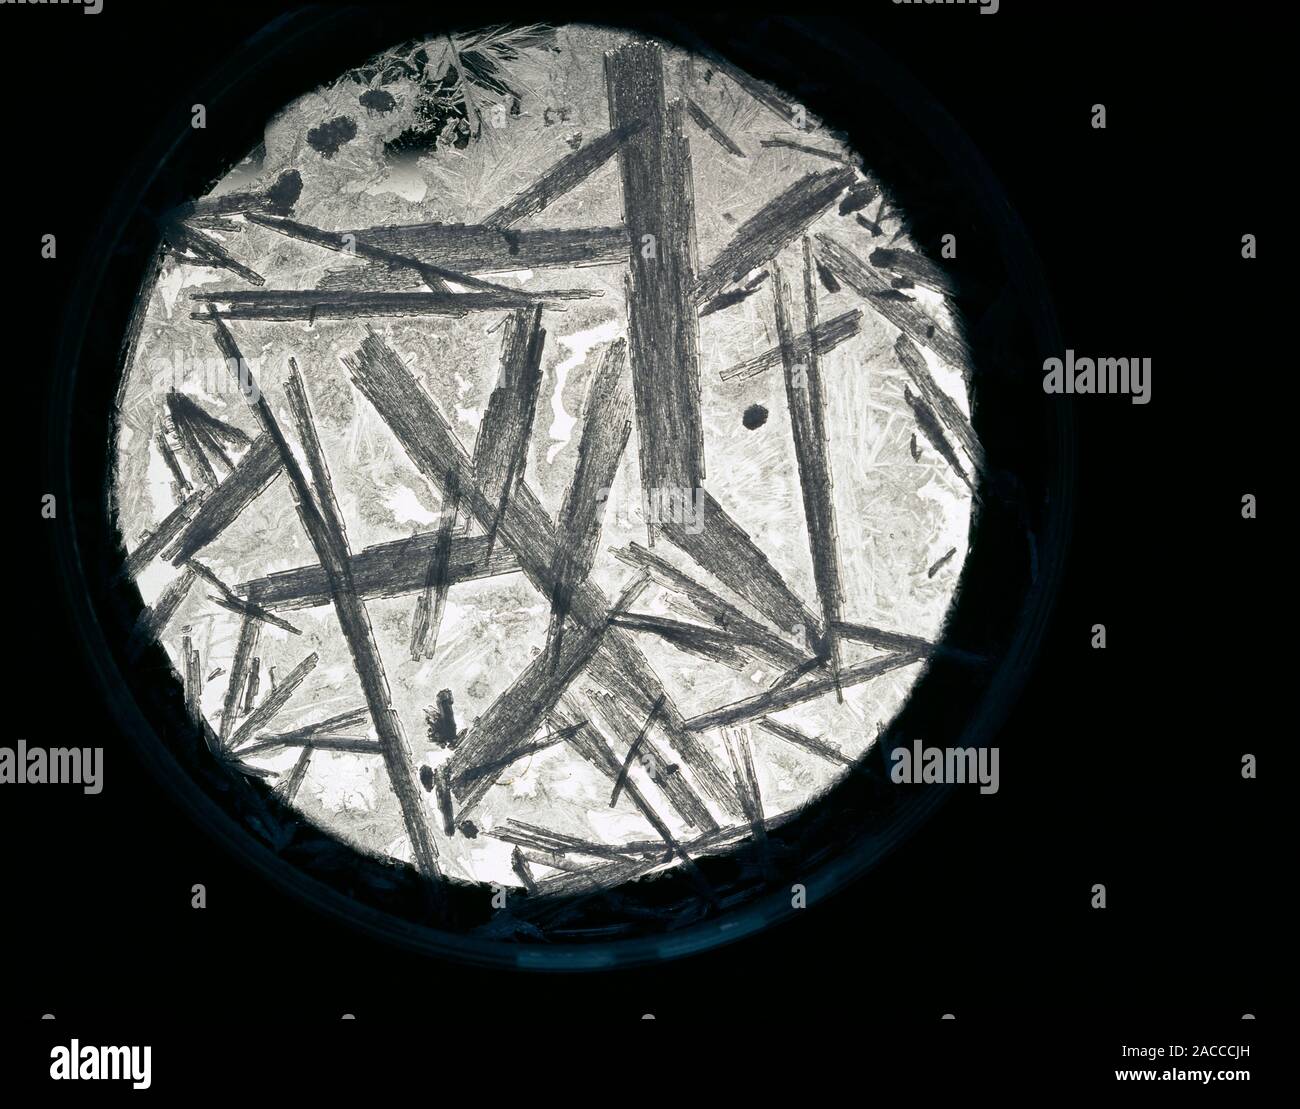 Nitrato de potasio (KNO3) cristales, vistos a través de un microscopio de  luz. Estos grandes los cristales se forman por el enfriamiento lento de la  cristalización de la solución. Potass Fotografía de